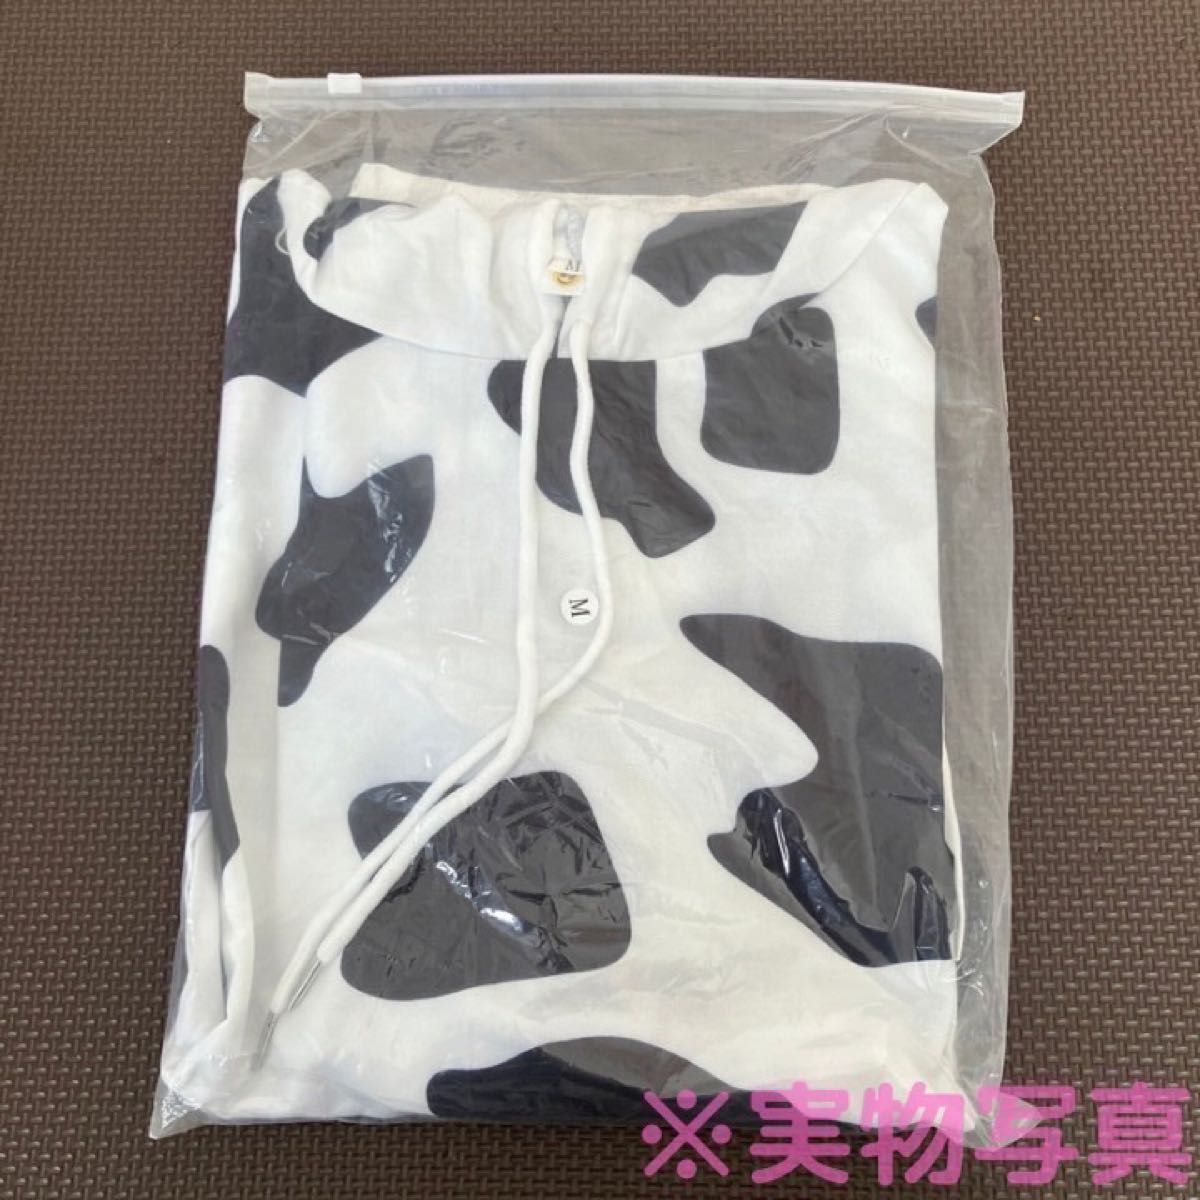 牛 柄 パーカー ダルメシアン ユニセックス 韓国 白黒 オーバー サイズ M